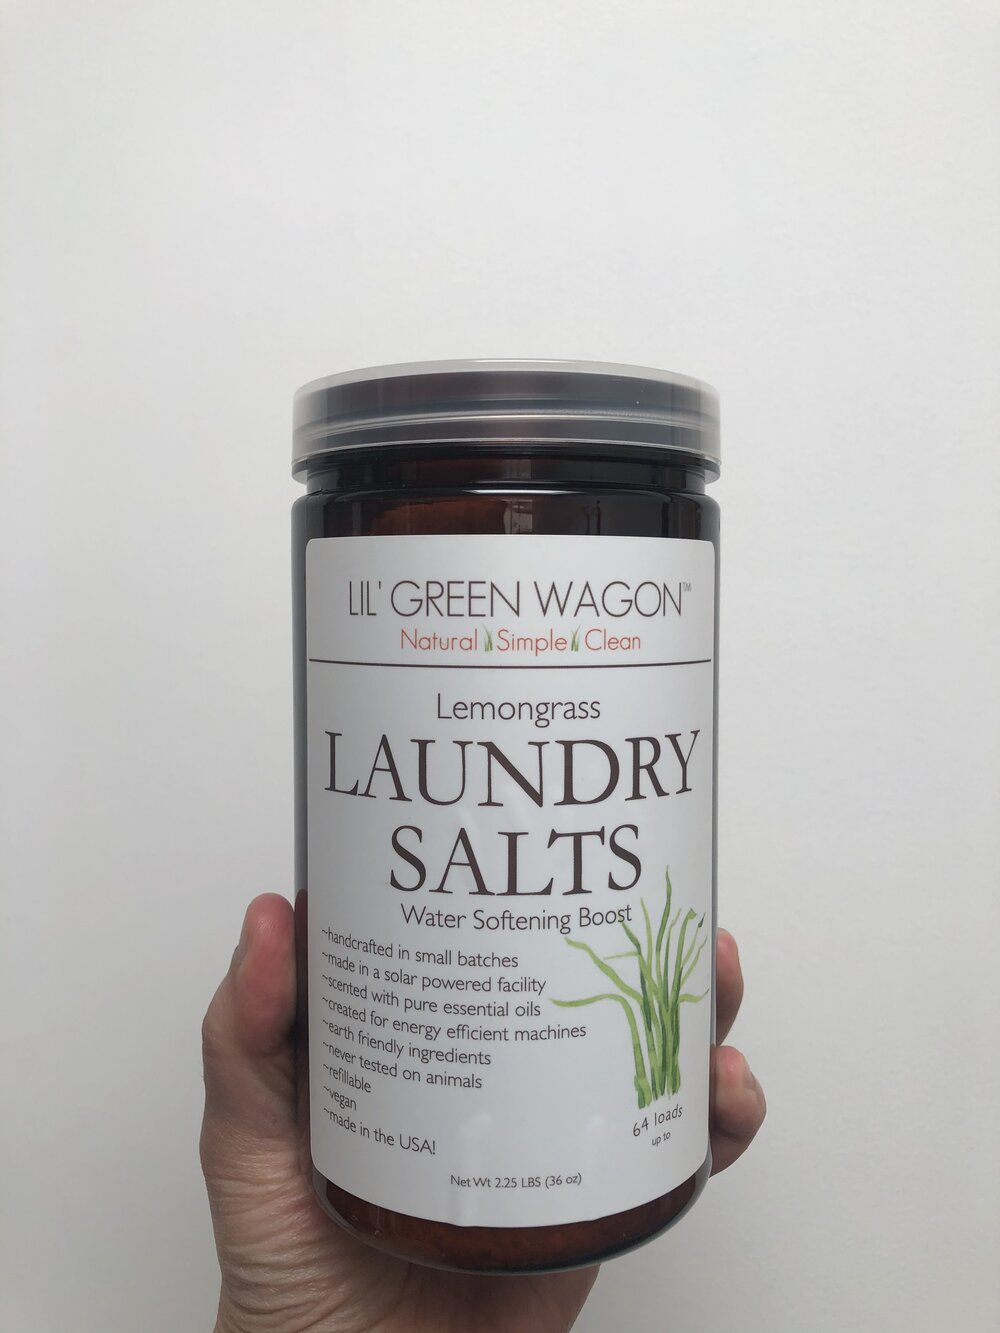 Lil' Green Wagon Laundry Salts